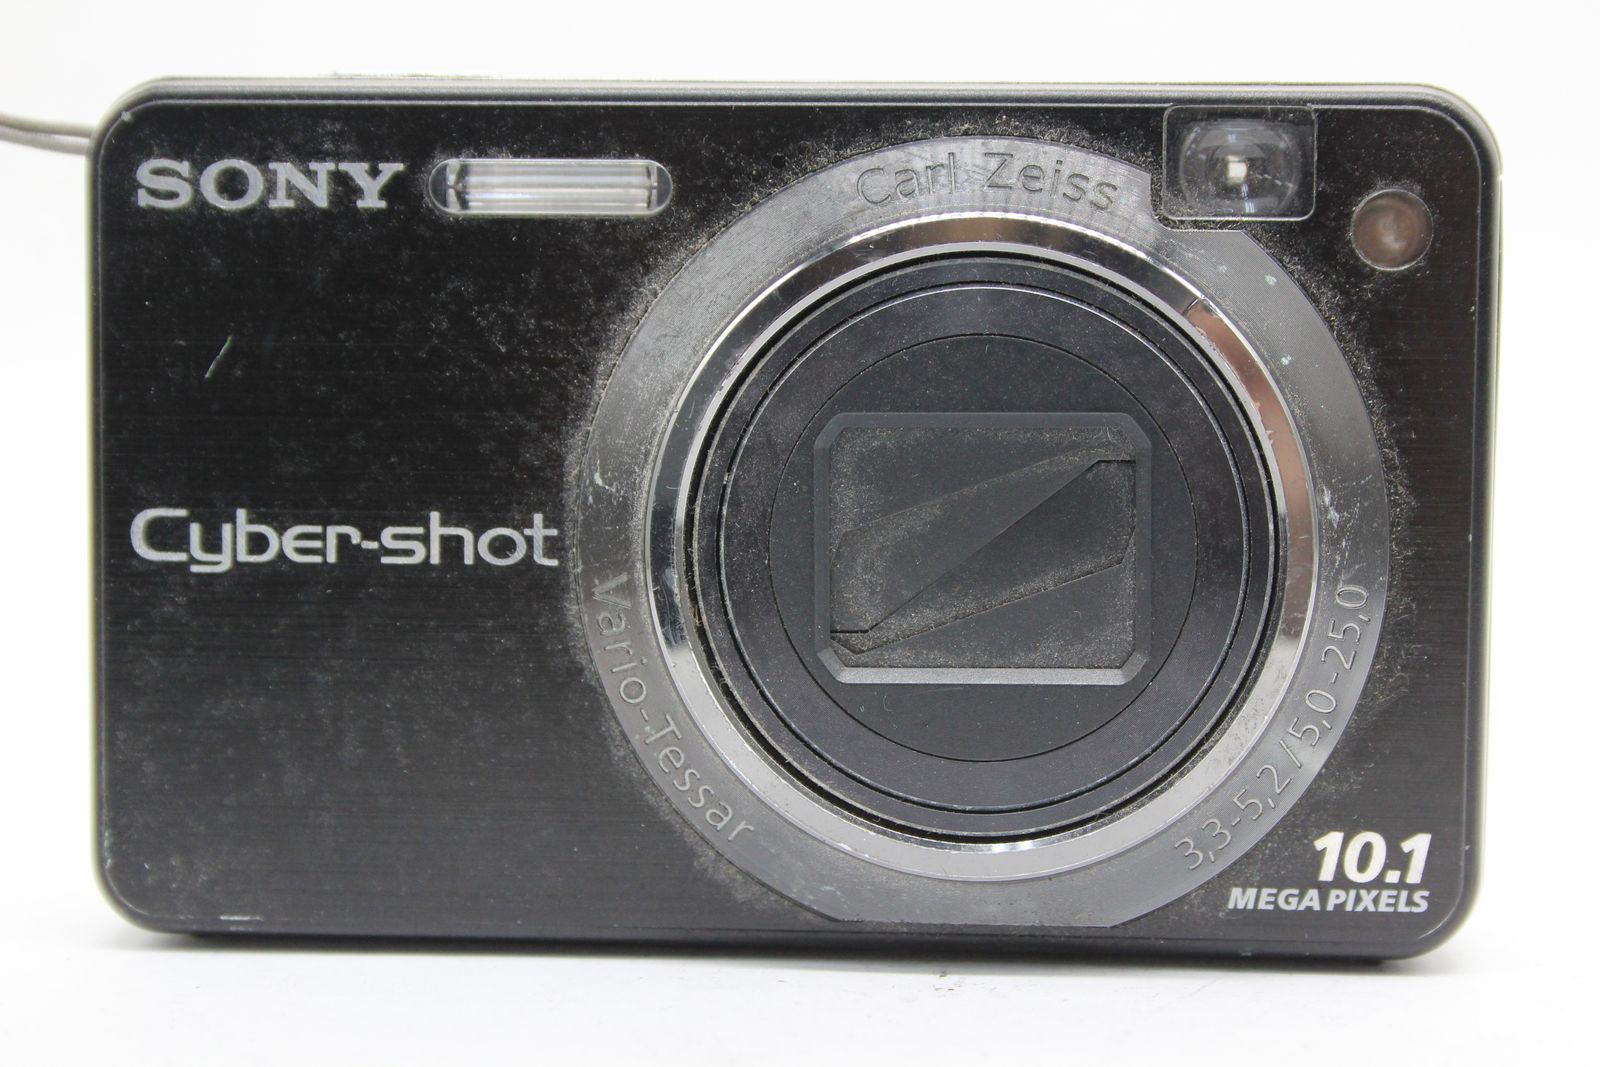 【返品保証】 ソニー SONY Cyber-shot DSC-W170 ブラック 5x バッテリー付き コンパクトデジタルカメラ s5086